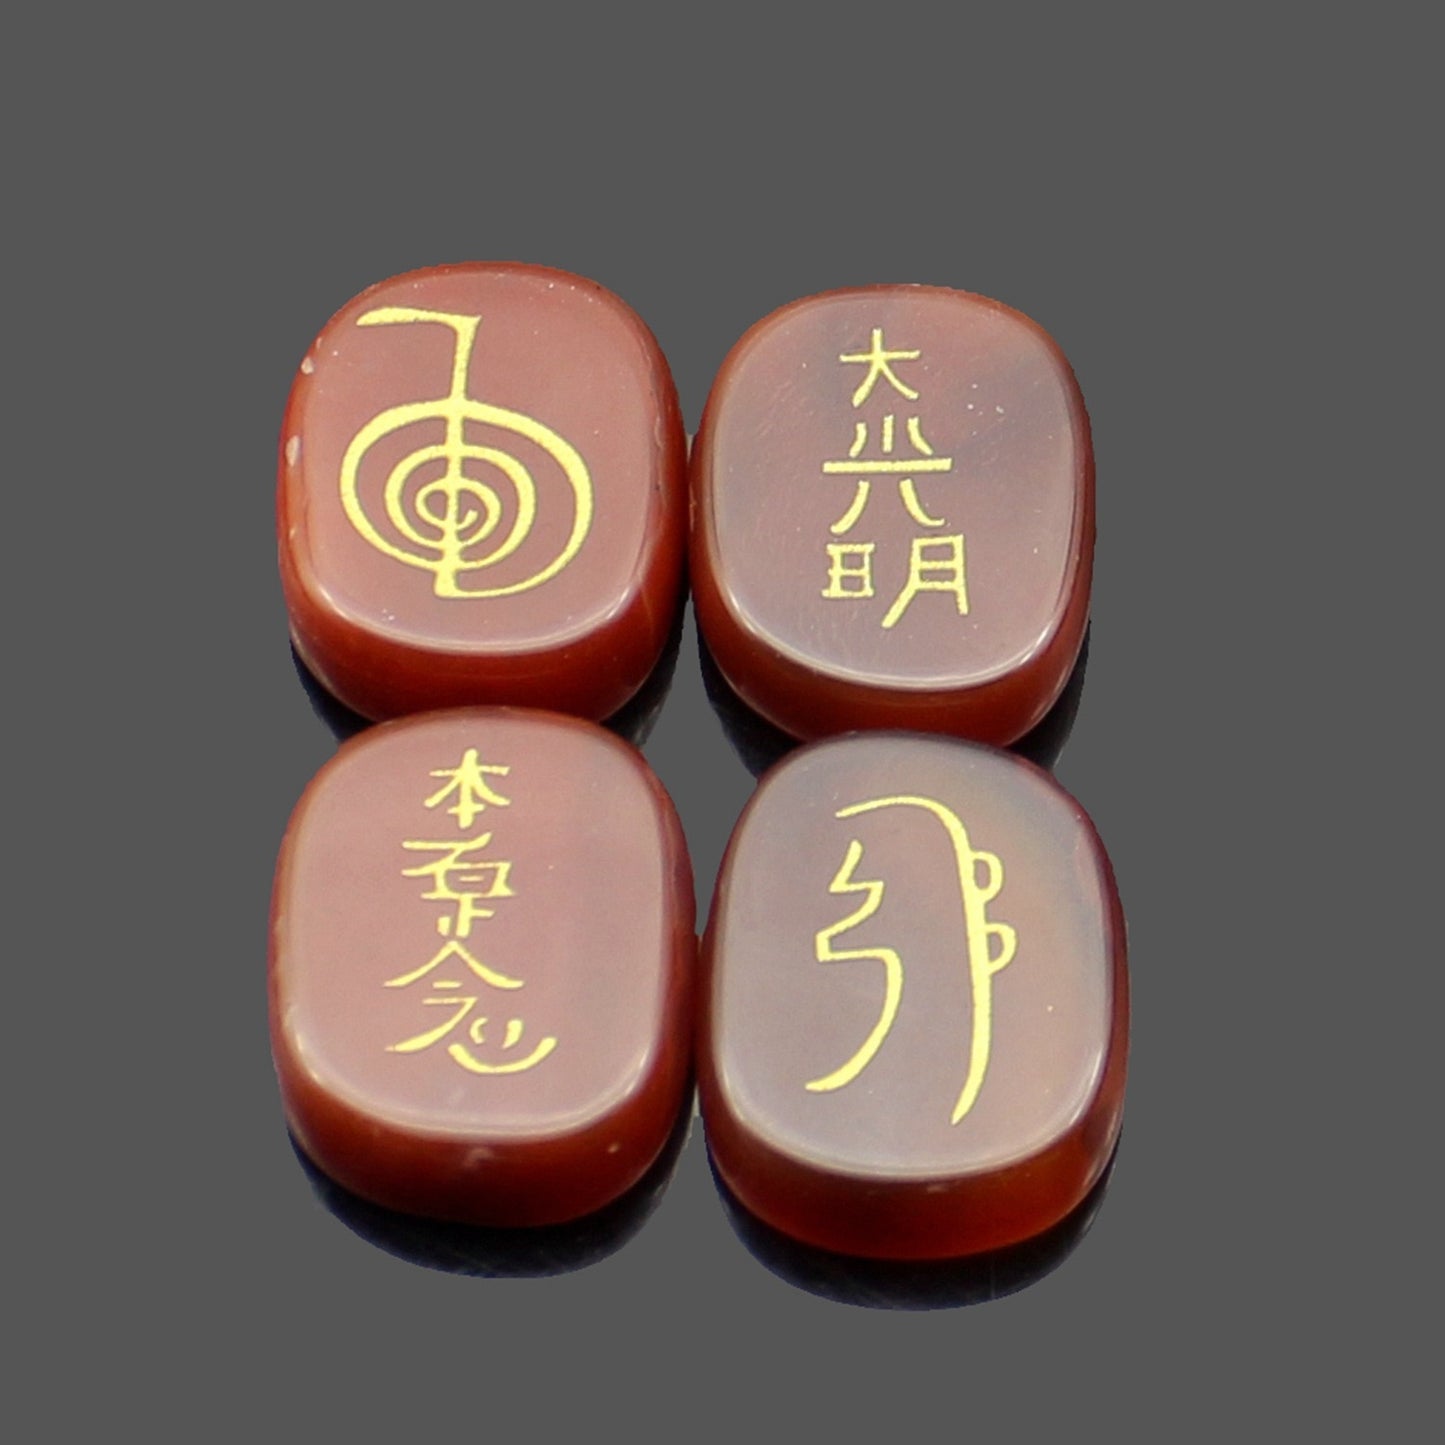 four reiki symbol engraved stones chokurei seihiki honshazeshonen daikomyo  (power, emotion, distance, higher level or master) red agate